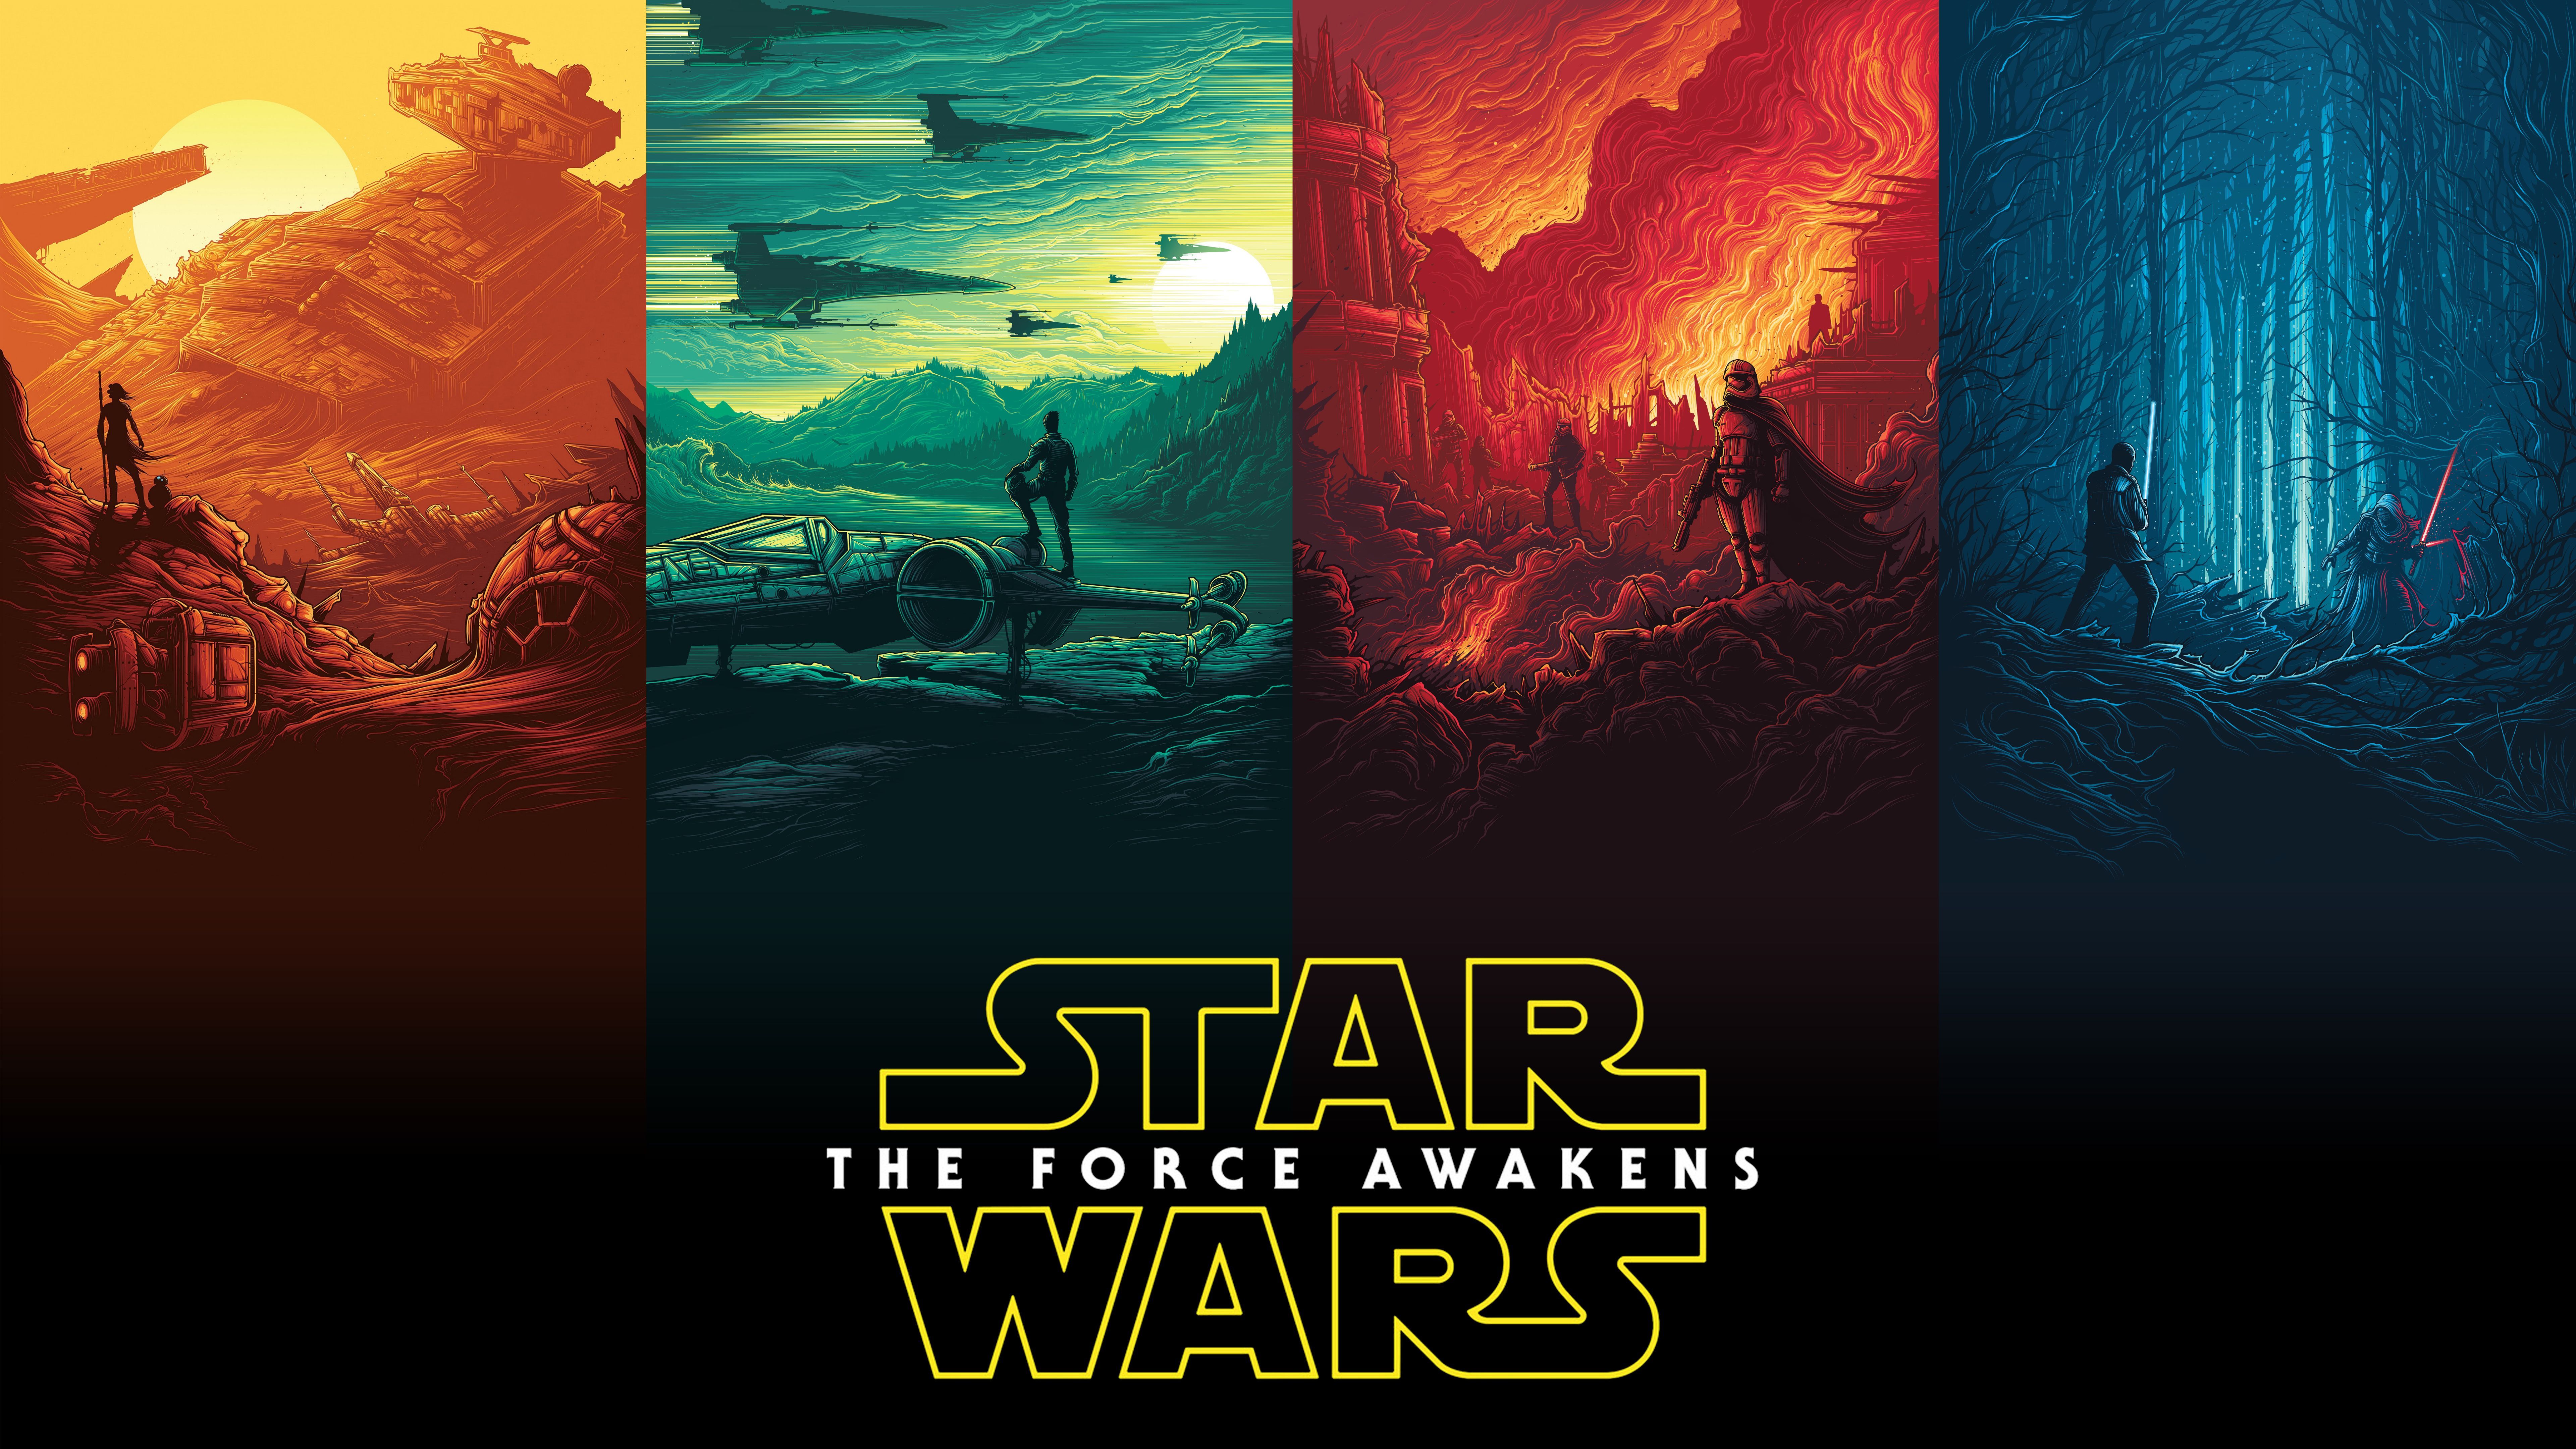 Rey Finn Kylo Ren Han Solo Luke Skywalker Star Wars Wallpaper (DESKTOP BACKGROUNDS). Best Wallpaper. Star wars wallpaper, Star wars background, Star wars poster